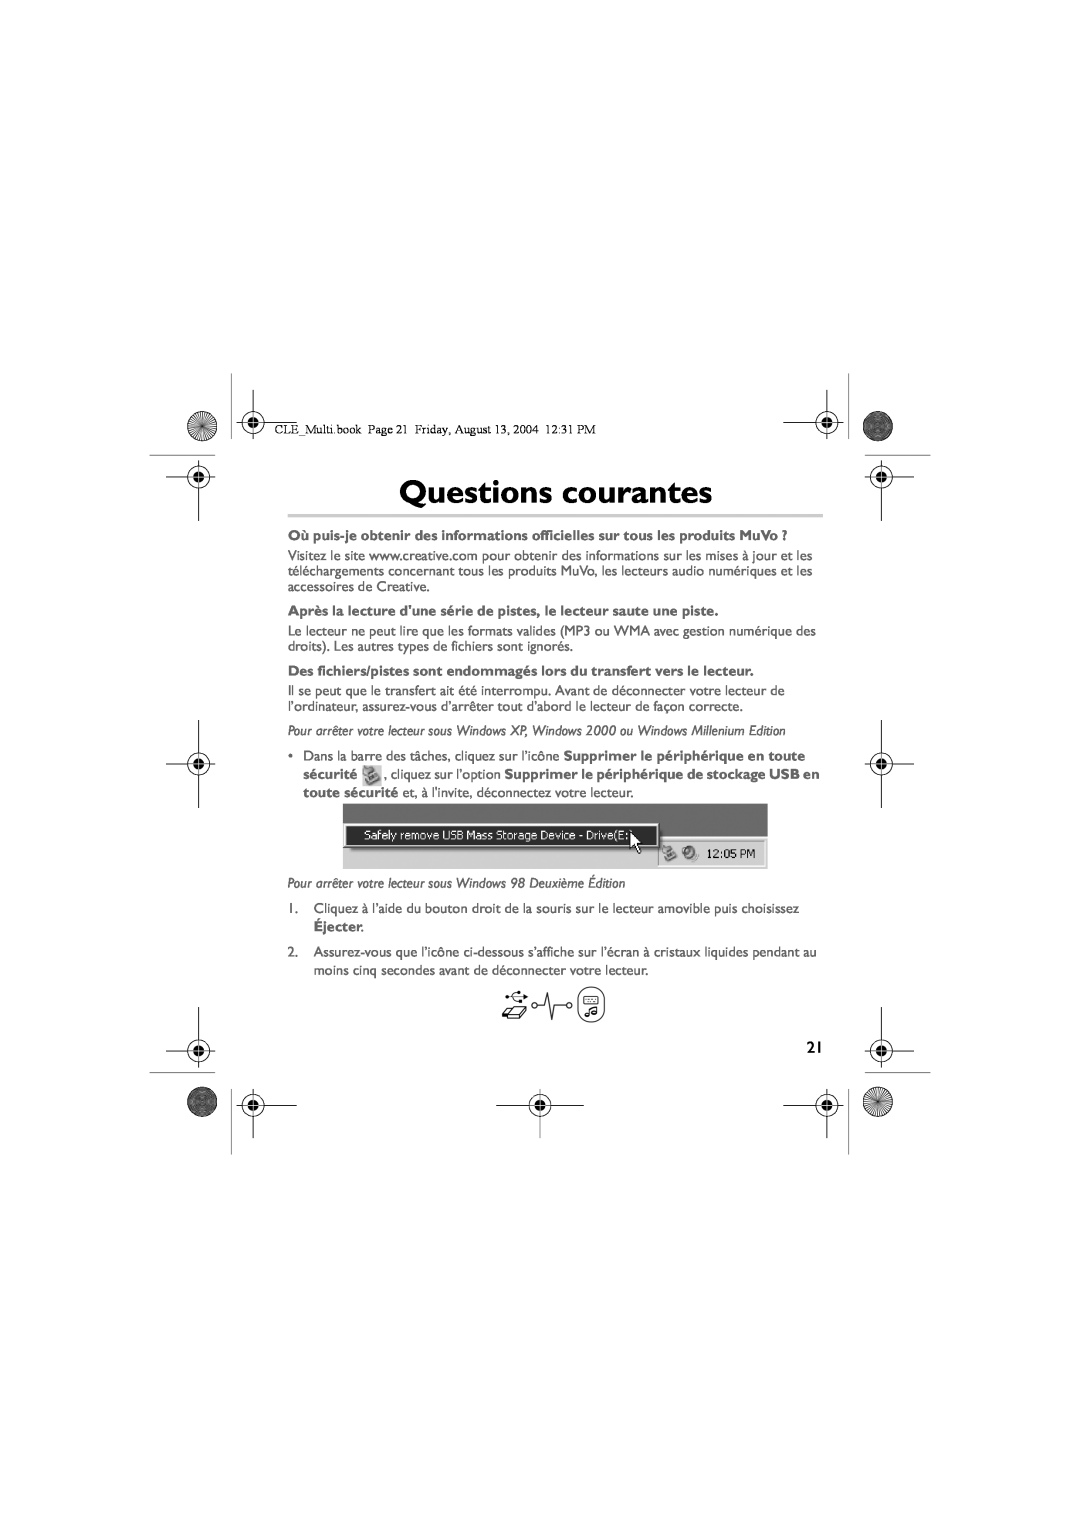 Creative CLE manual Questions courantes, Après la lecture dune série de pistes, le lecteur saute une piste 